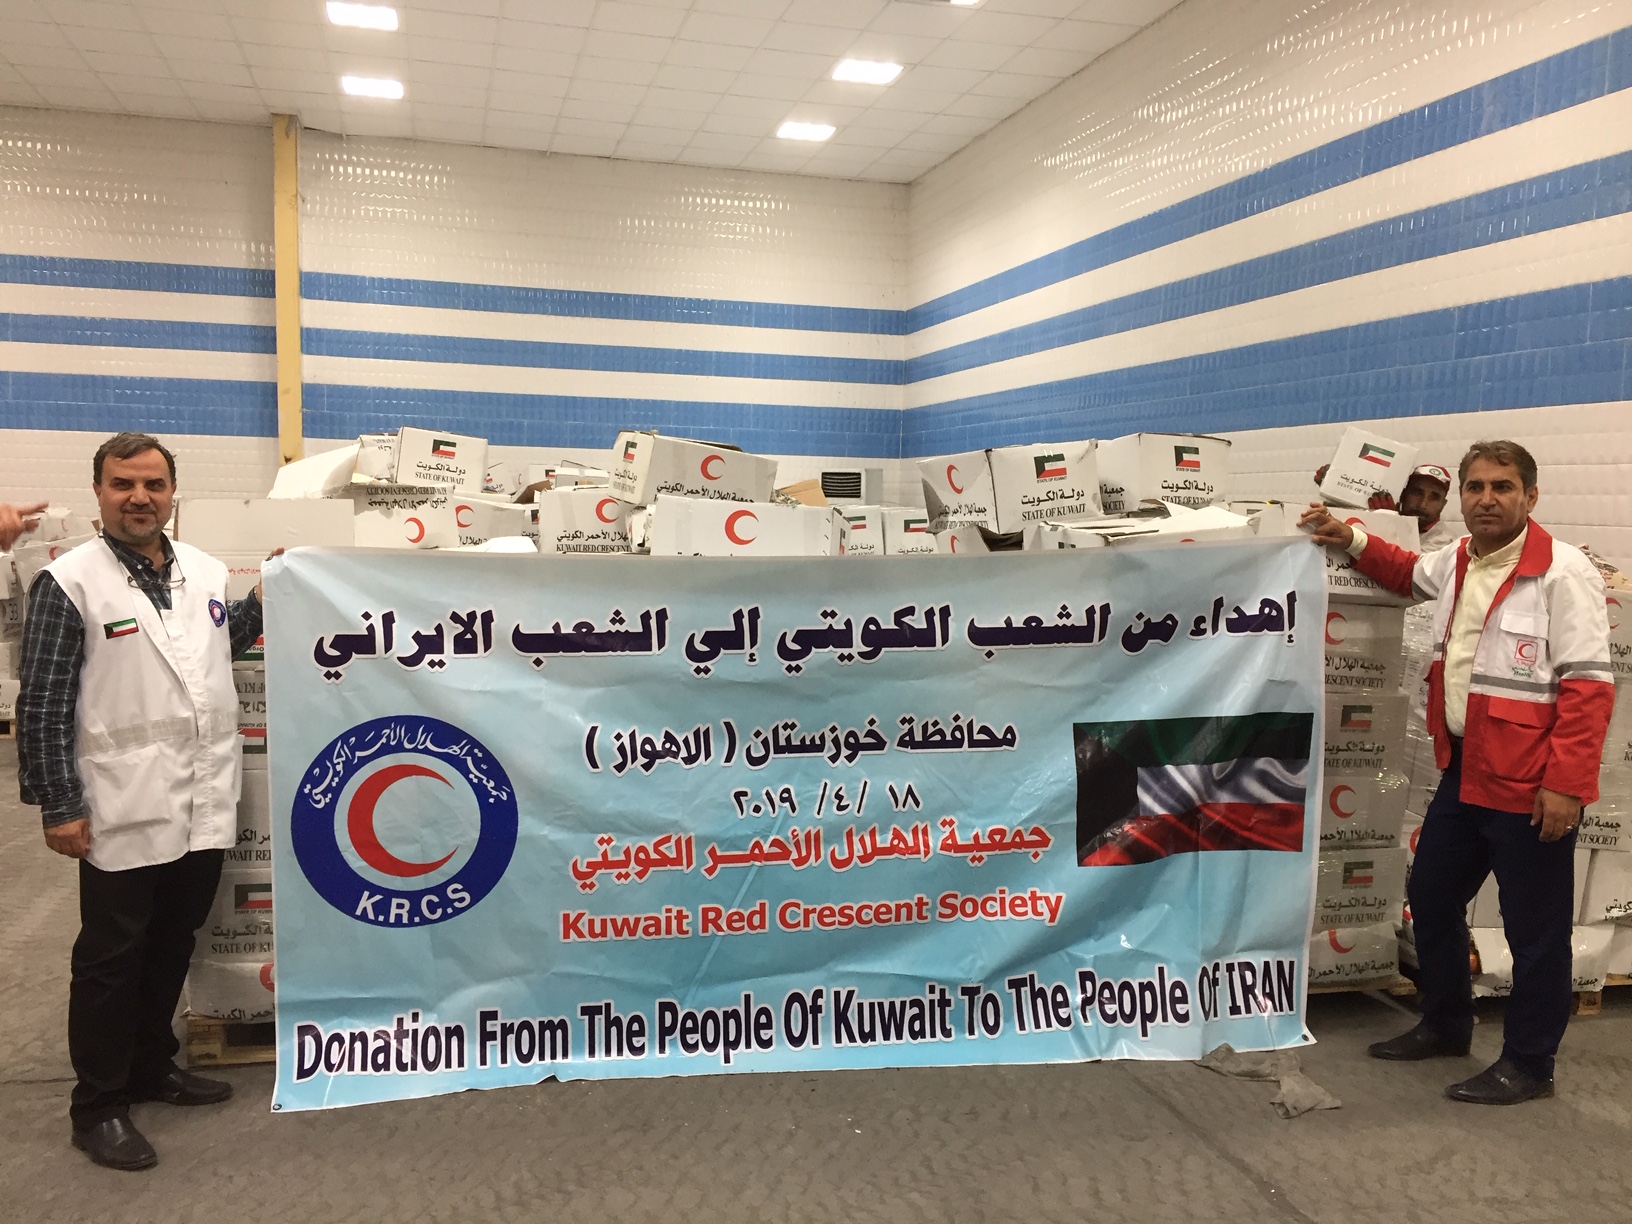 اهداء من جمعية الهلال الاحمر الكويتي للمتضررين جراء السيول الاخيرة في مدينة الاهواز بمحافظة خوزستان الايرانية.